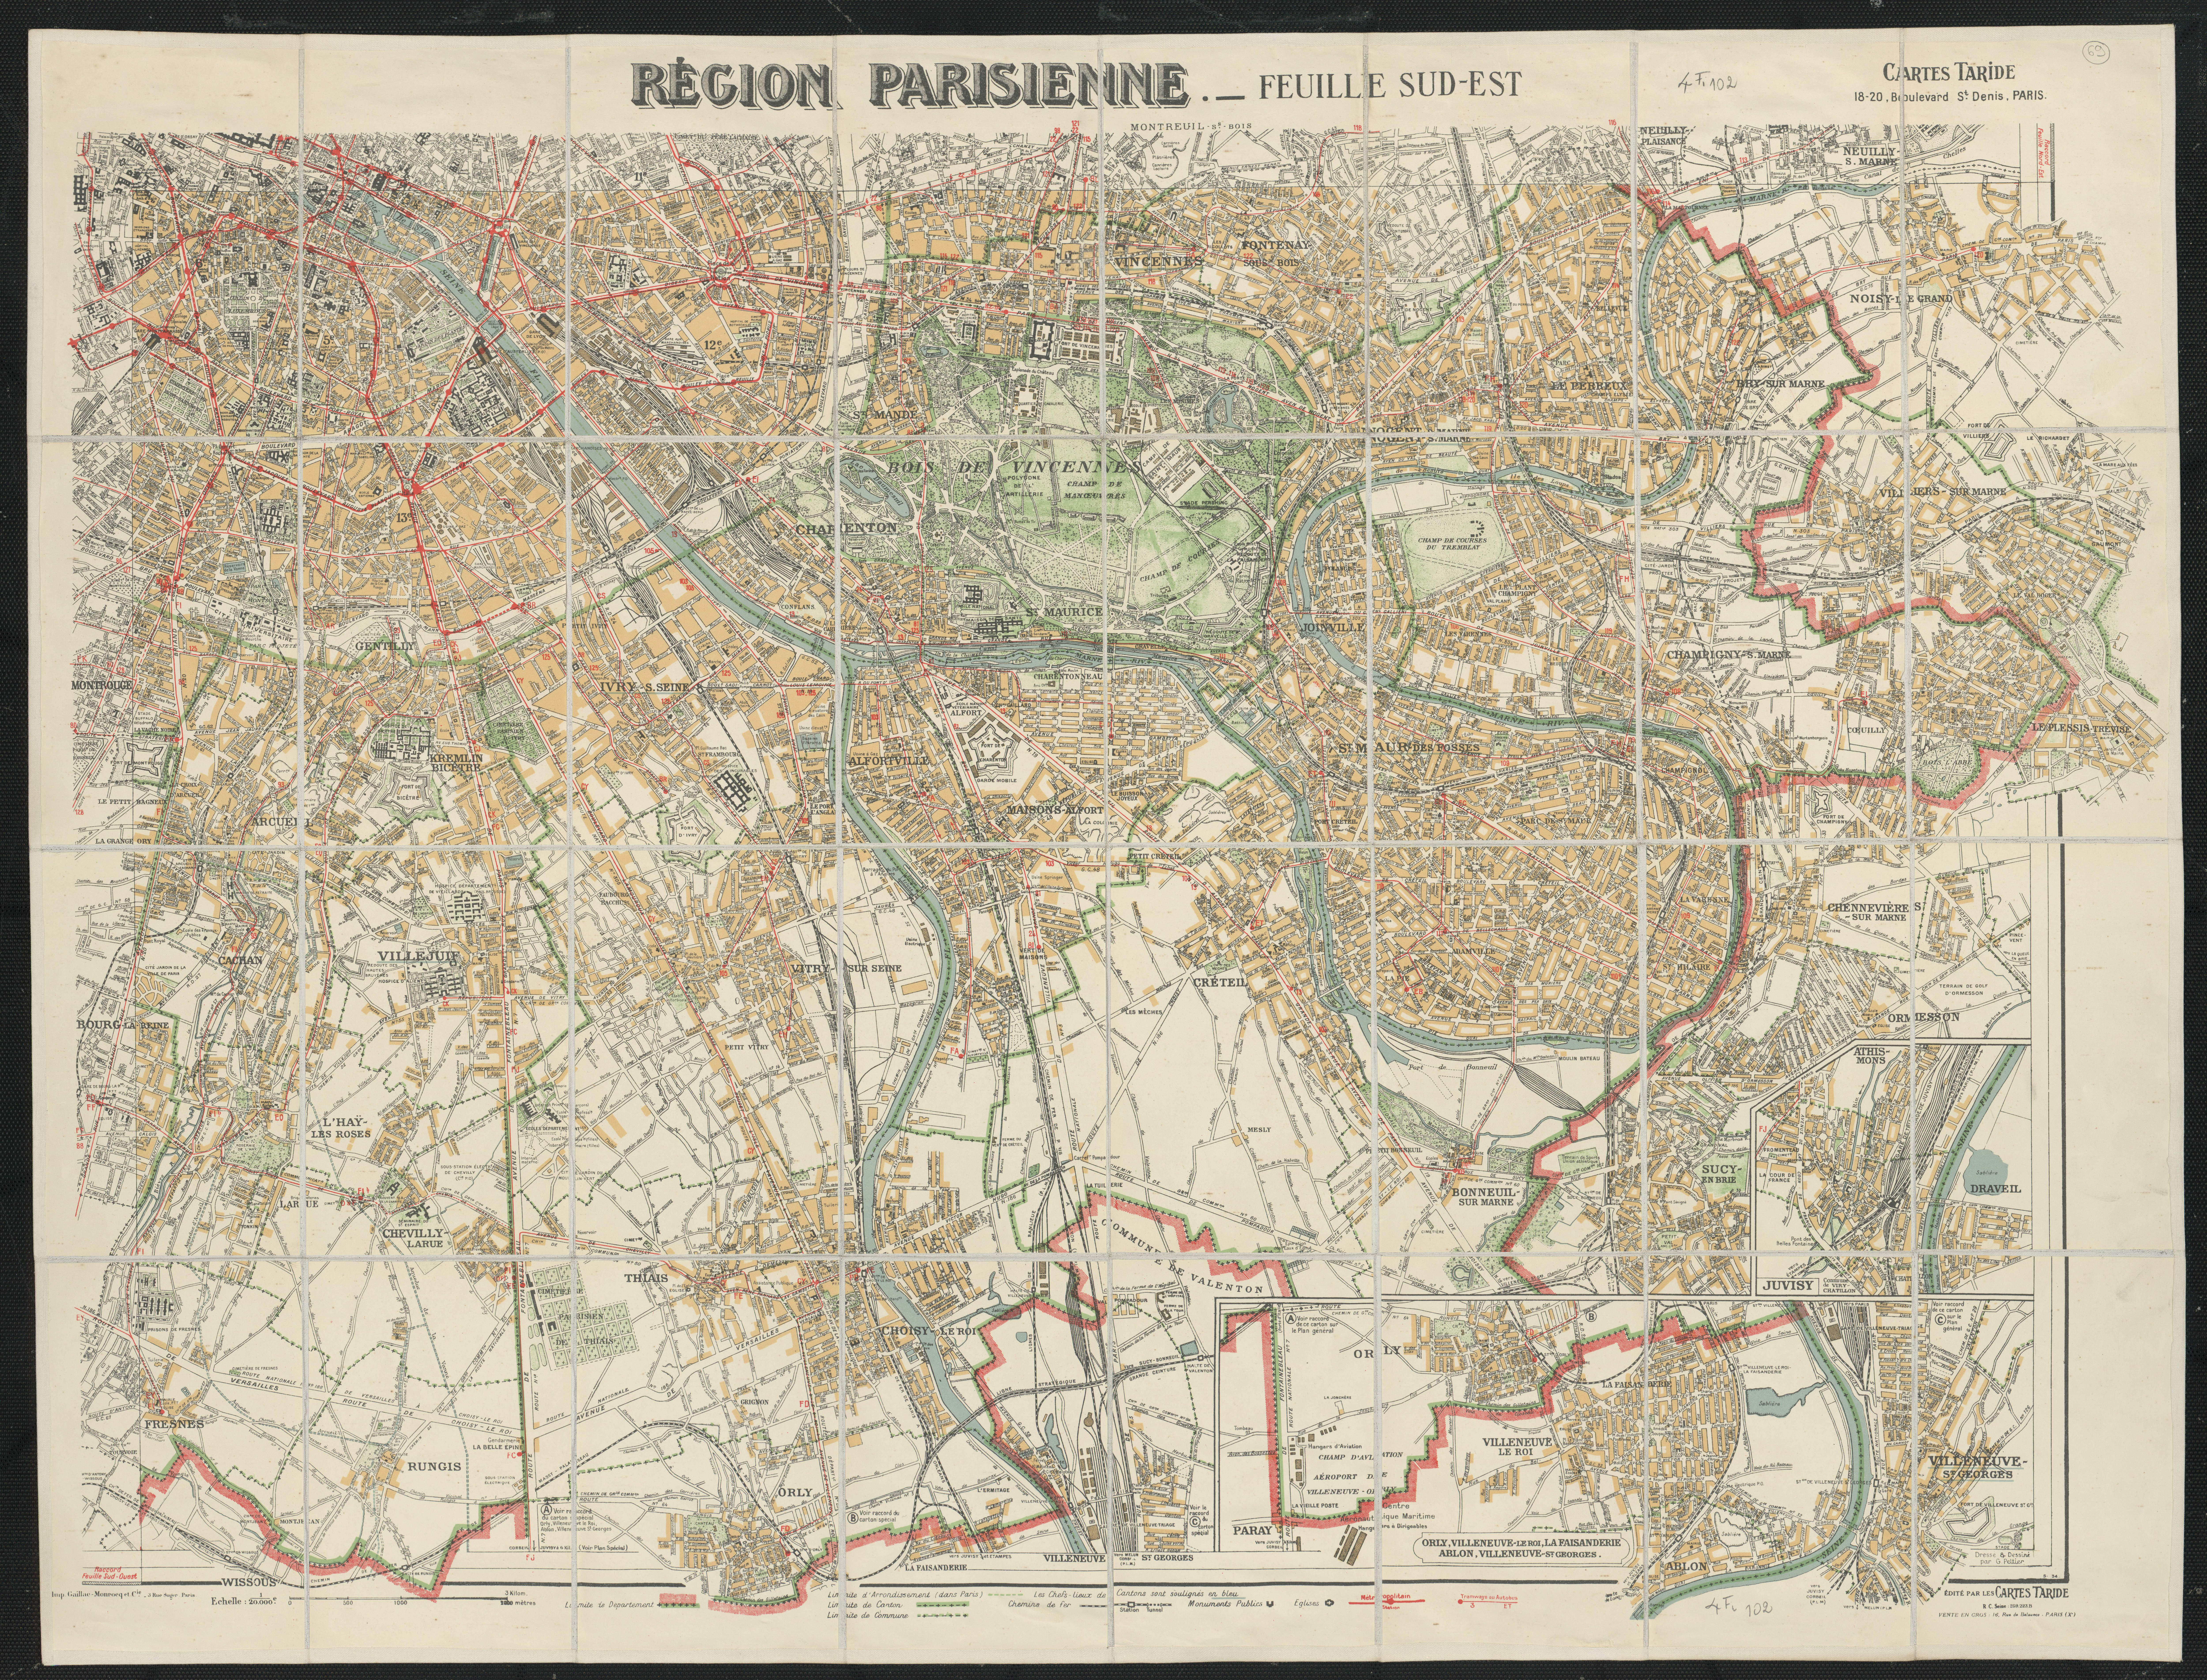 Région parisienne : feuille sud-est. 1926.